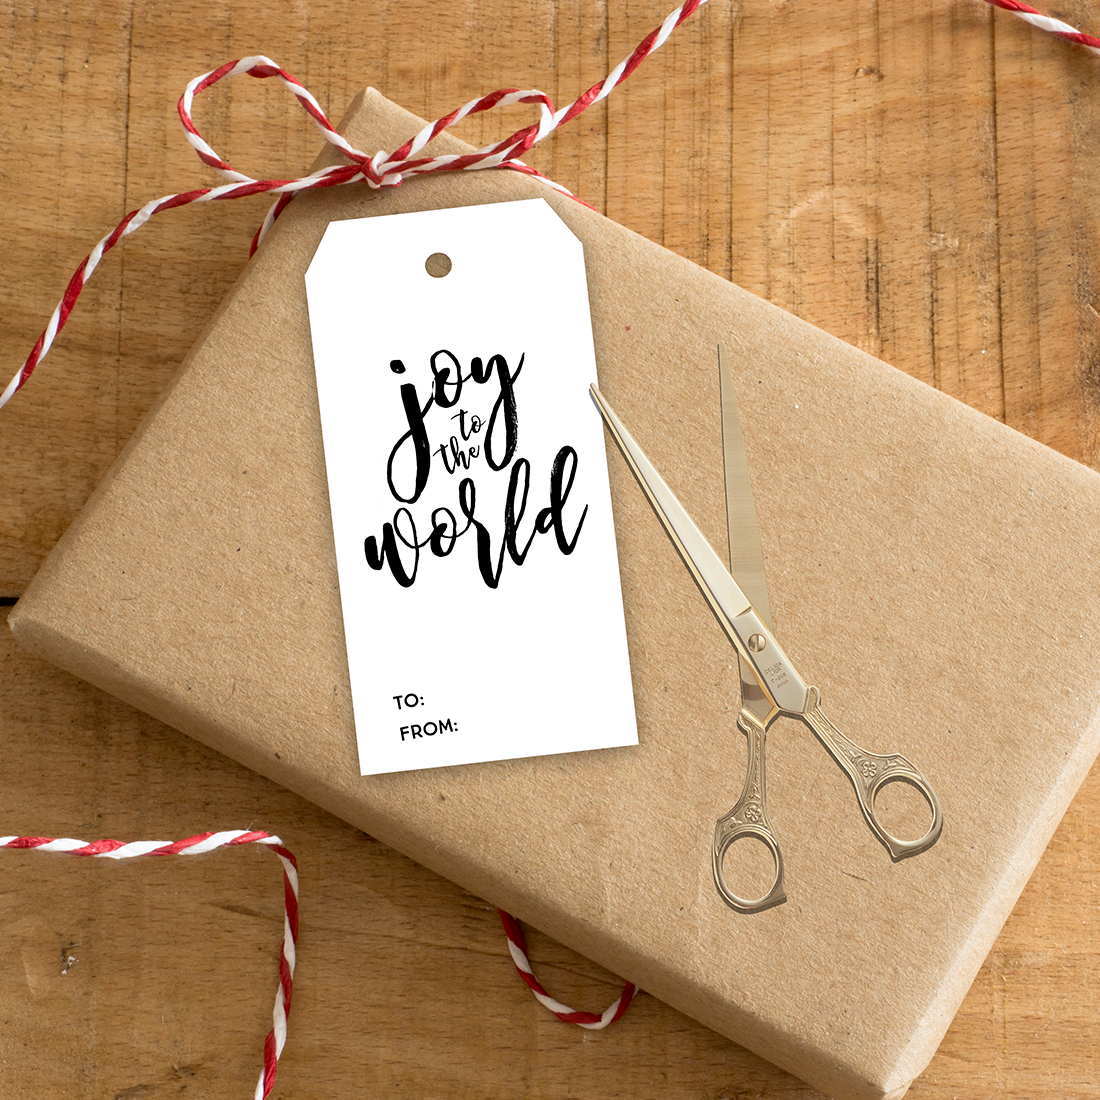 Holidays: Adorable printable Christmas gift tags to use this holiday season. 